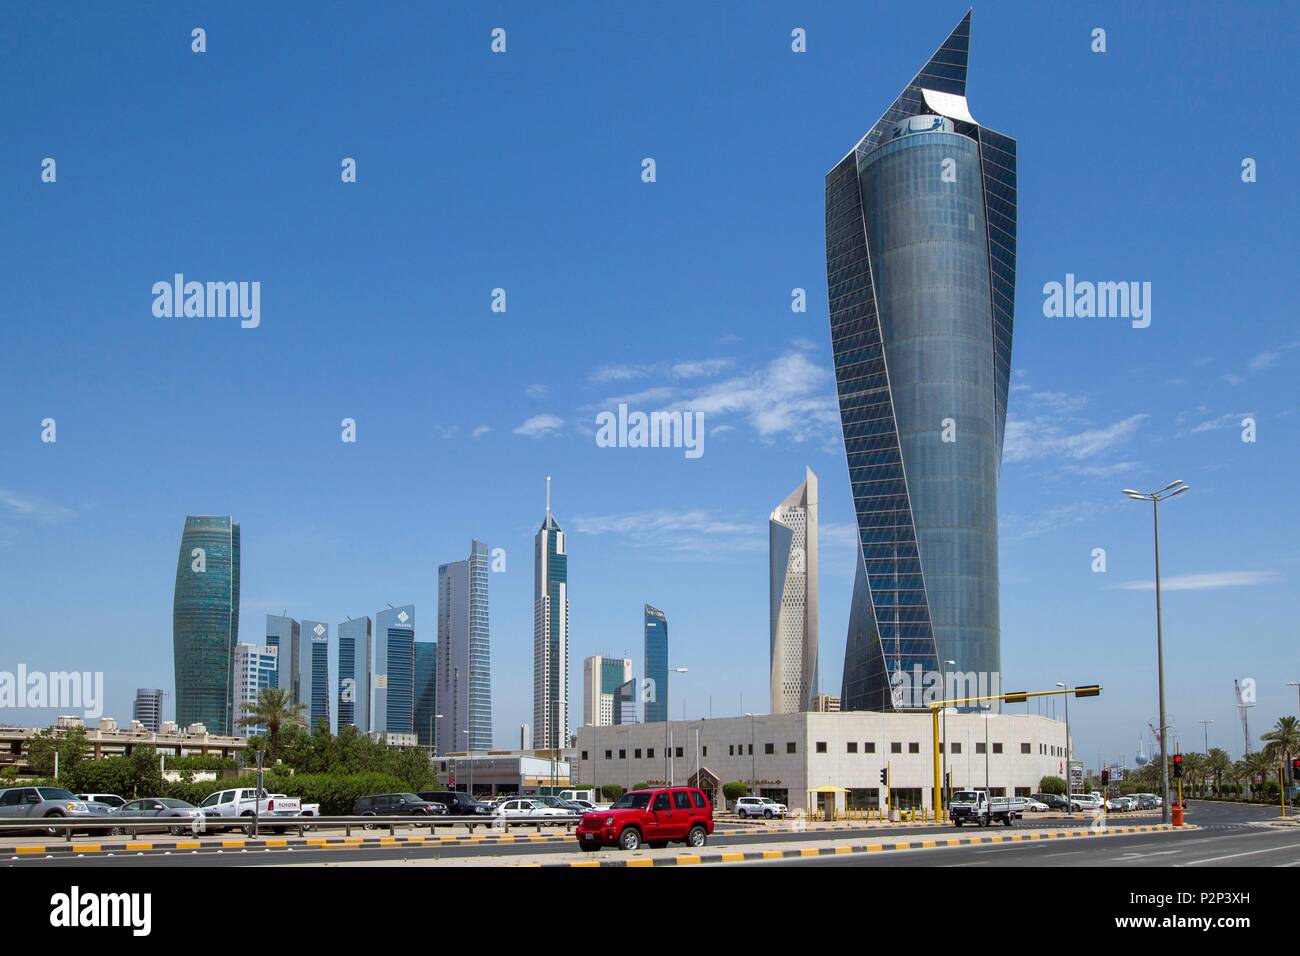 Le Koweït, le golfe Persique, le Koweït City, Al Tijaria tour avec Al Hamra tower en arrière-plan dans le quartier central des affaires Banque D'Images